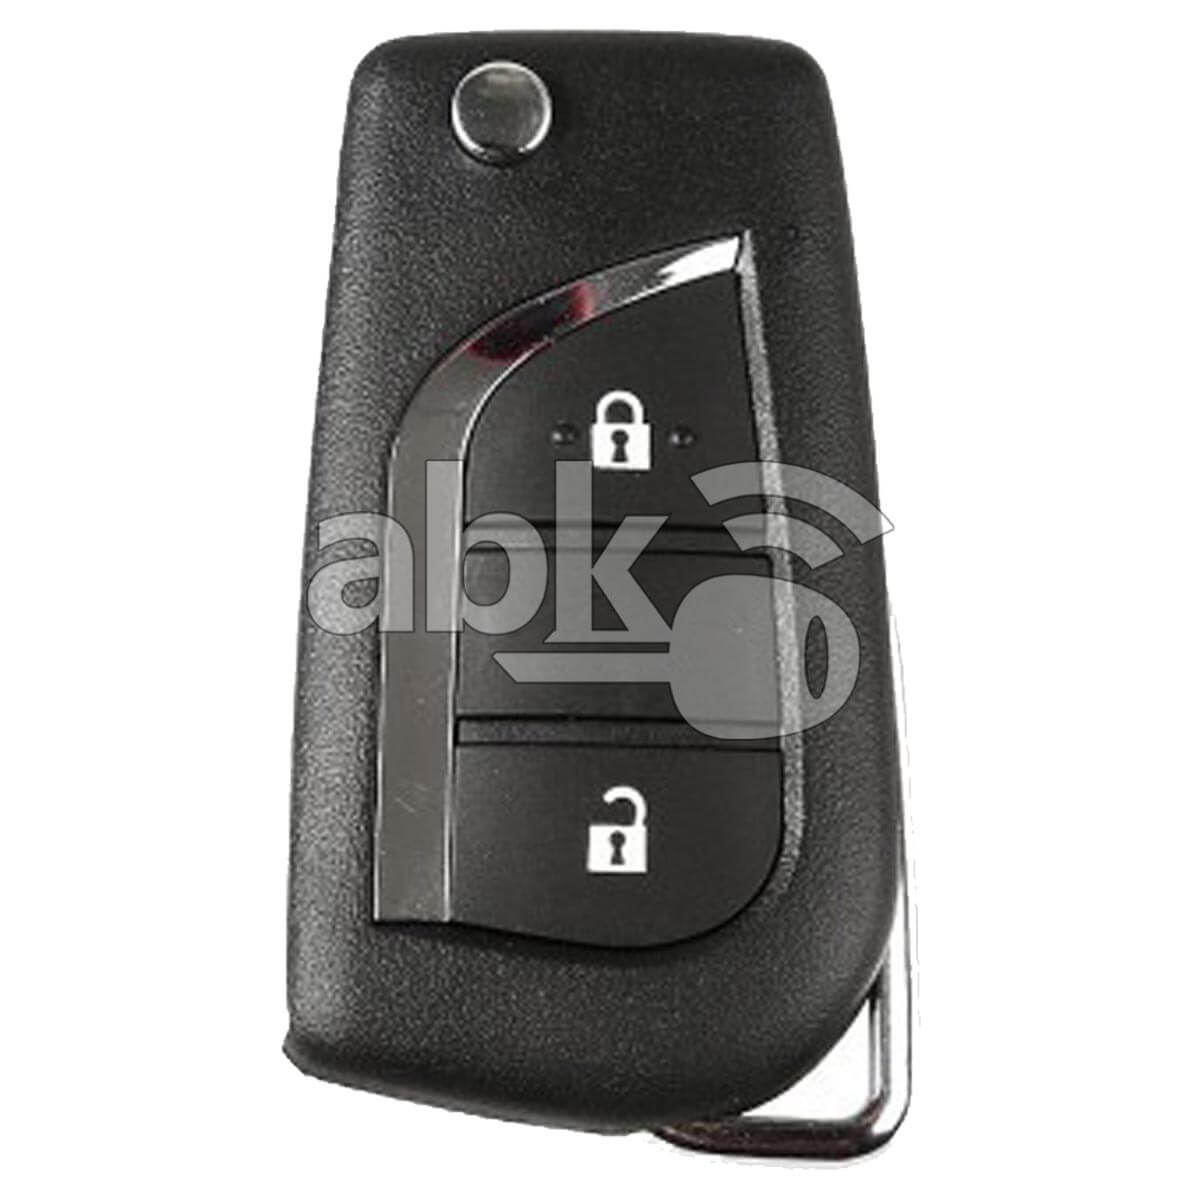 Xhorse VVDI Key Tool VVDI2 Toyota Style Wired Flip Remote 2Buttons XKTO01EN - ABK-1015-XKTO01EN - 